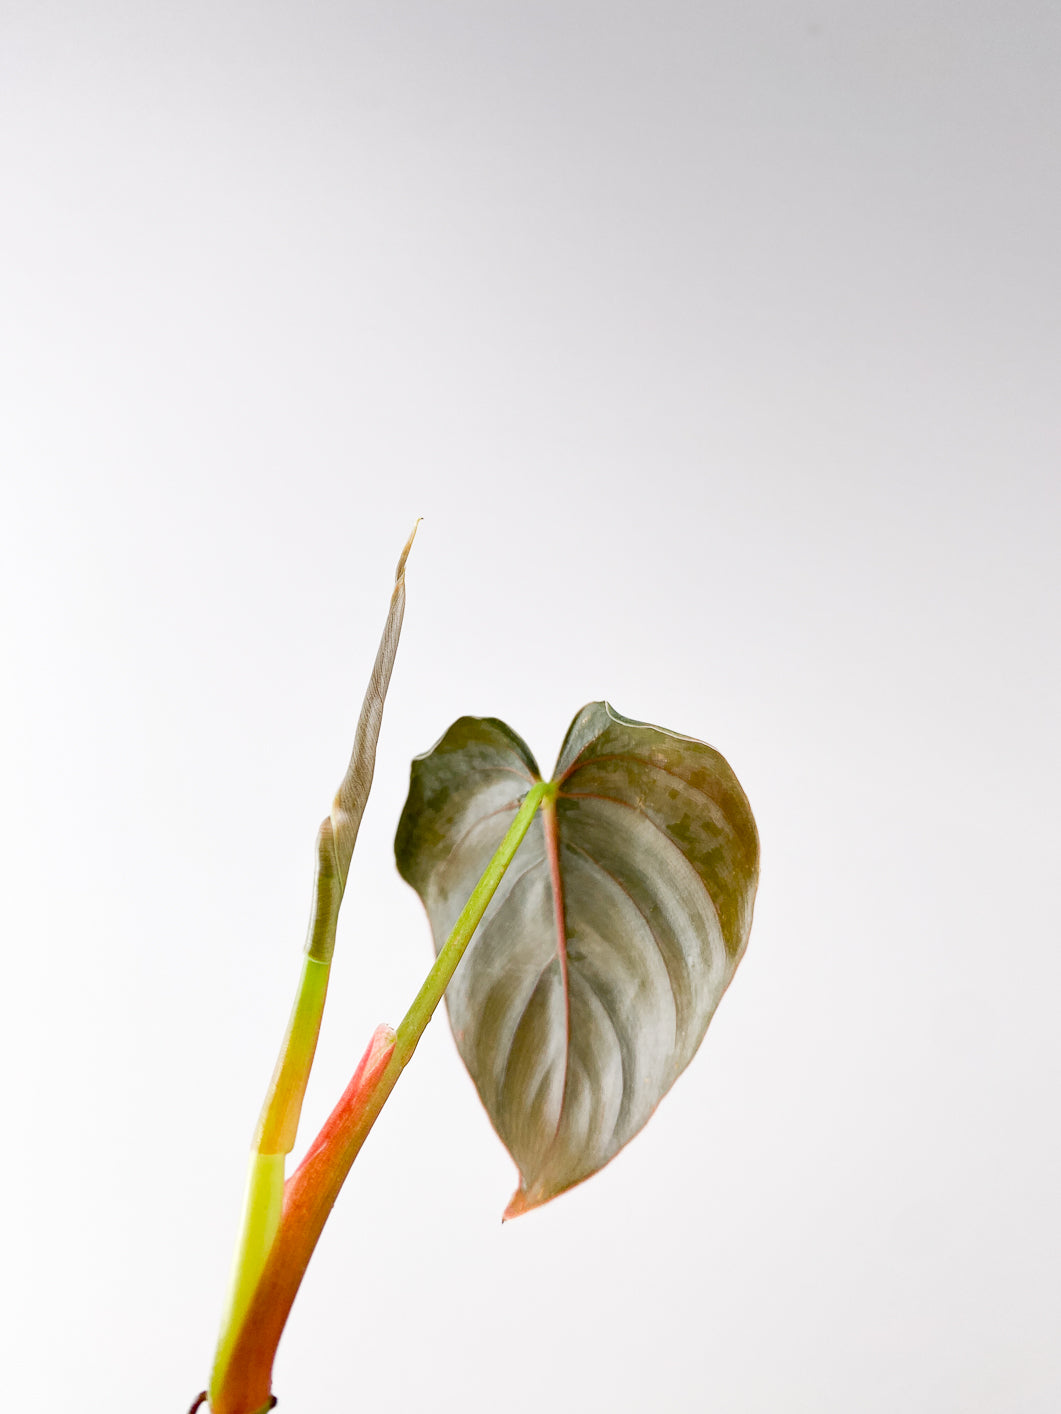 Philodendron Brandtianum Wild Form 1 leaf 1 unfurling leaf rooting